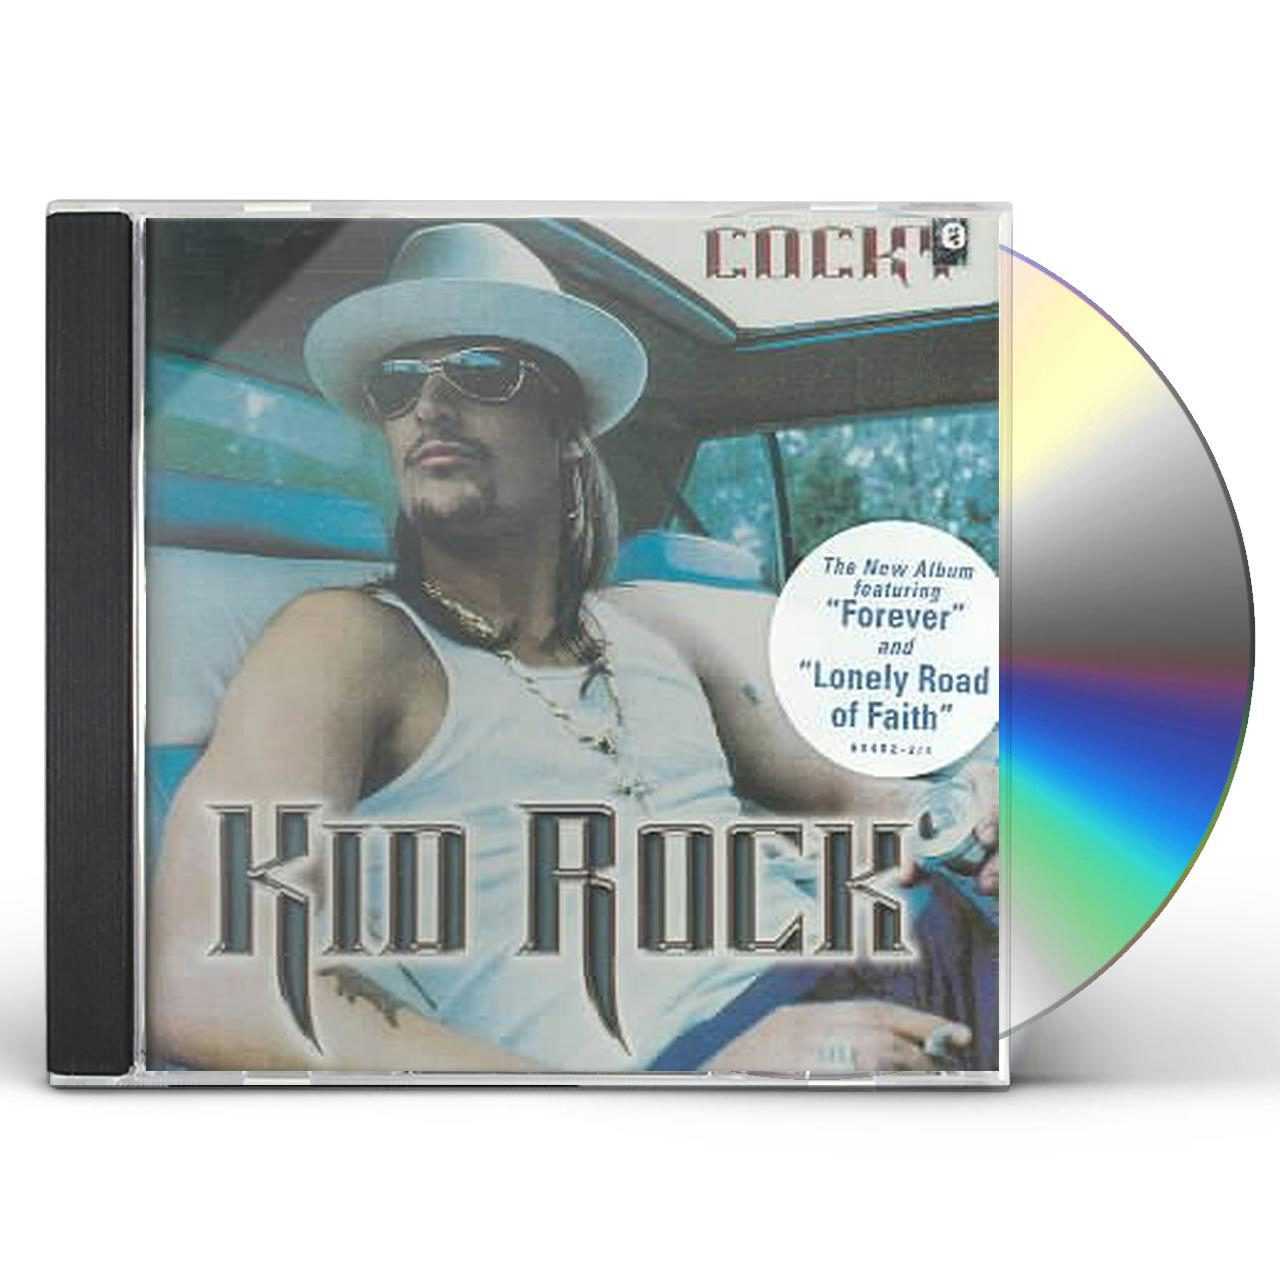 Kid Rock DVD - Rhinestone Cowboy